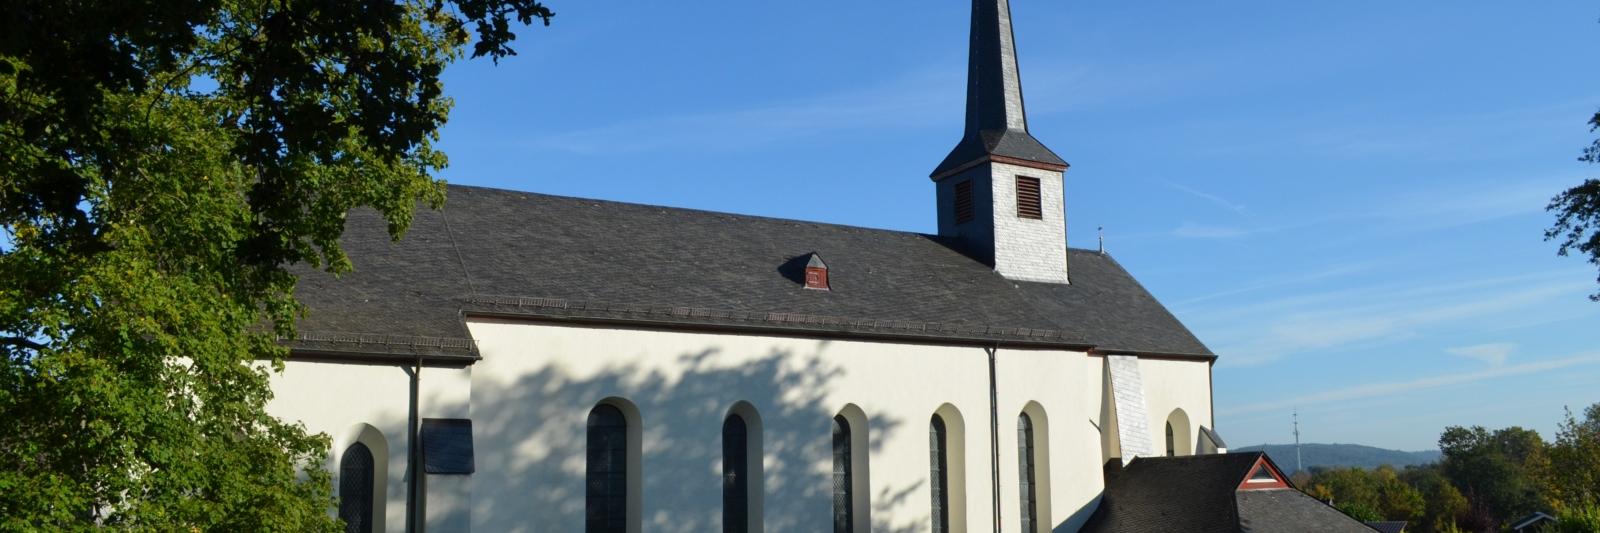 Pfarrkirche Sankt Katharina in Stadt Blankenberg